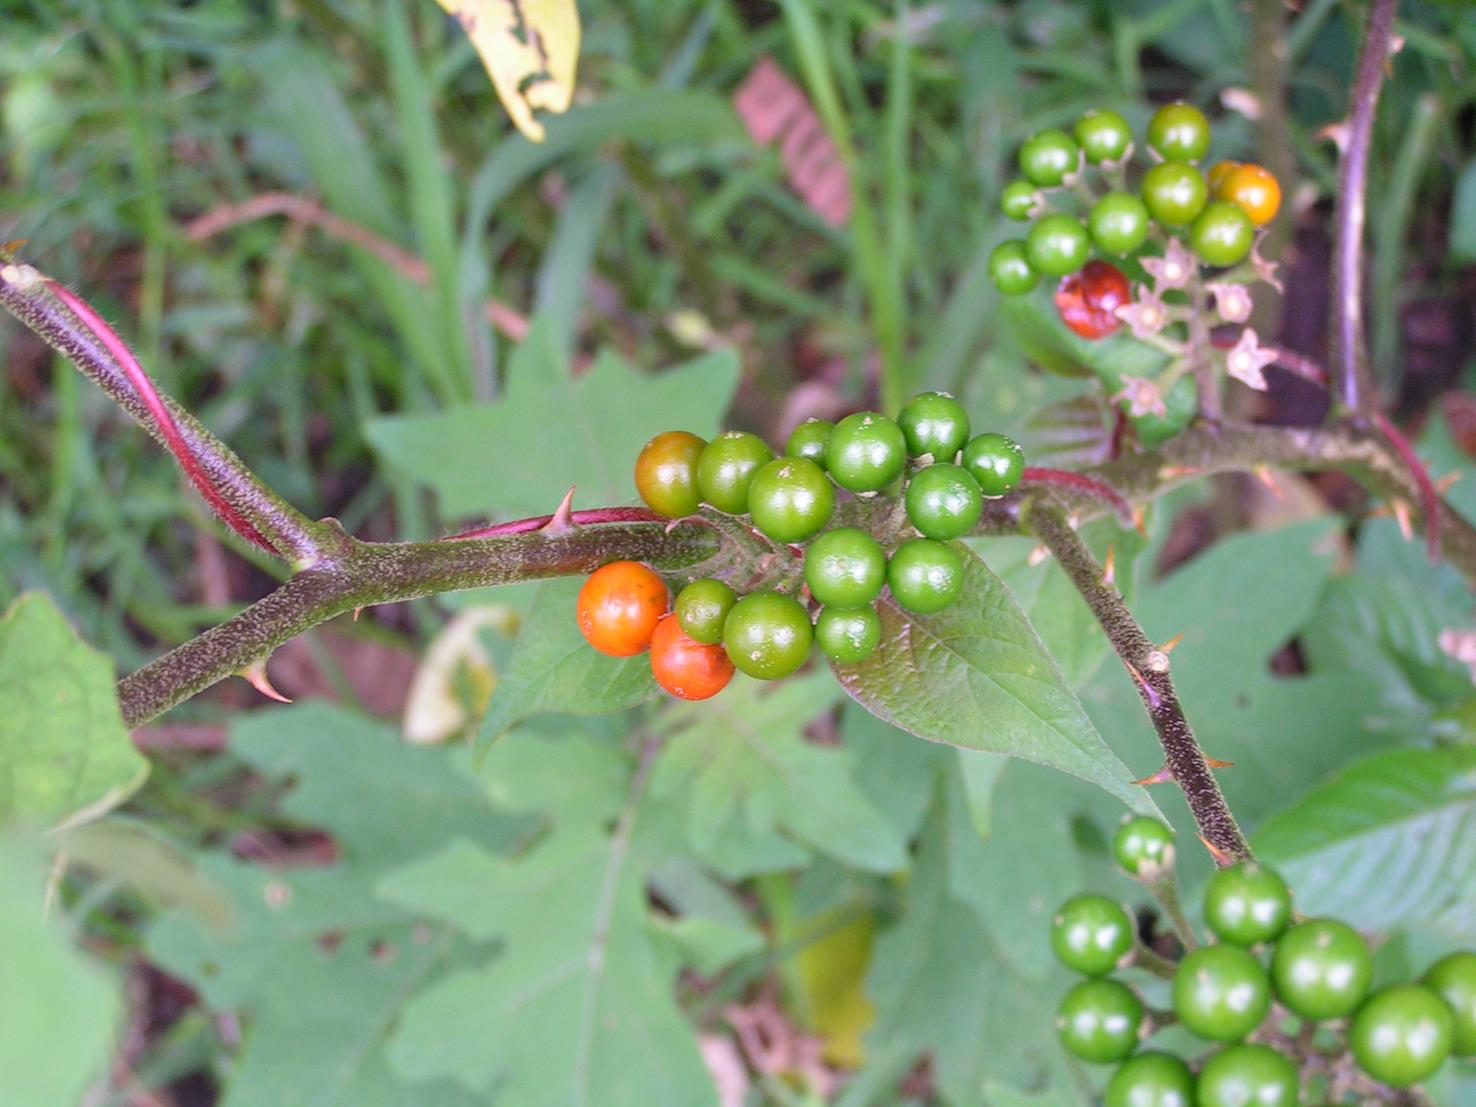 Solanum anguivi